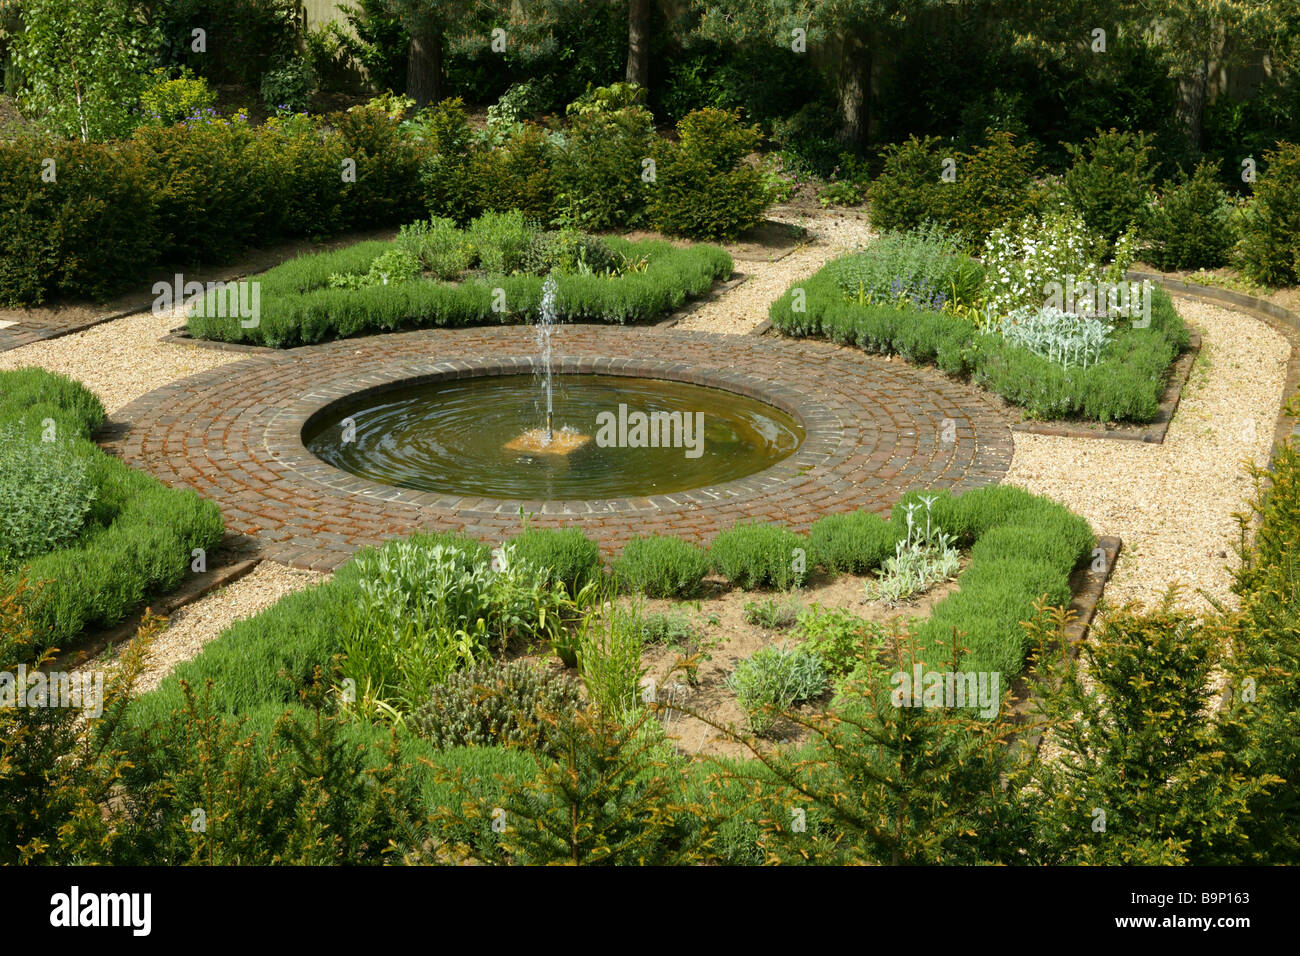 Un jardin anglais, aménagé avec du gravier et des frontières, et d'une centrale d'eau d'une fontaine circulaire. Banque D'Images